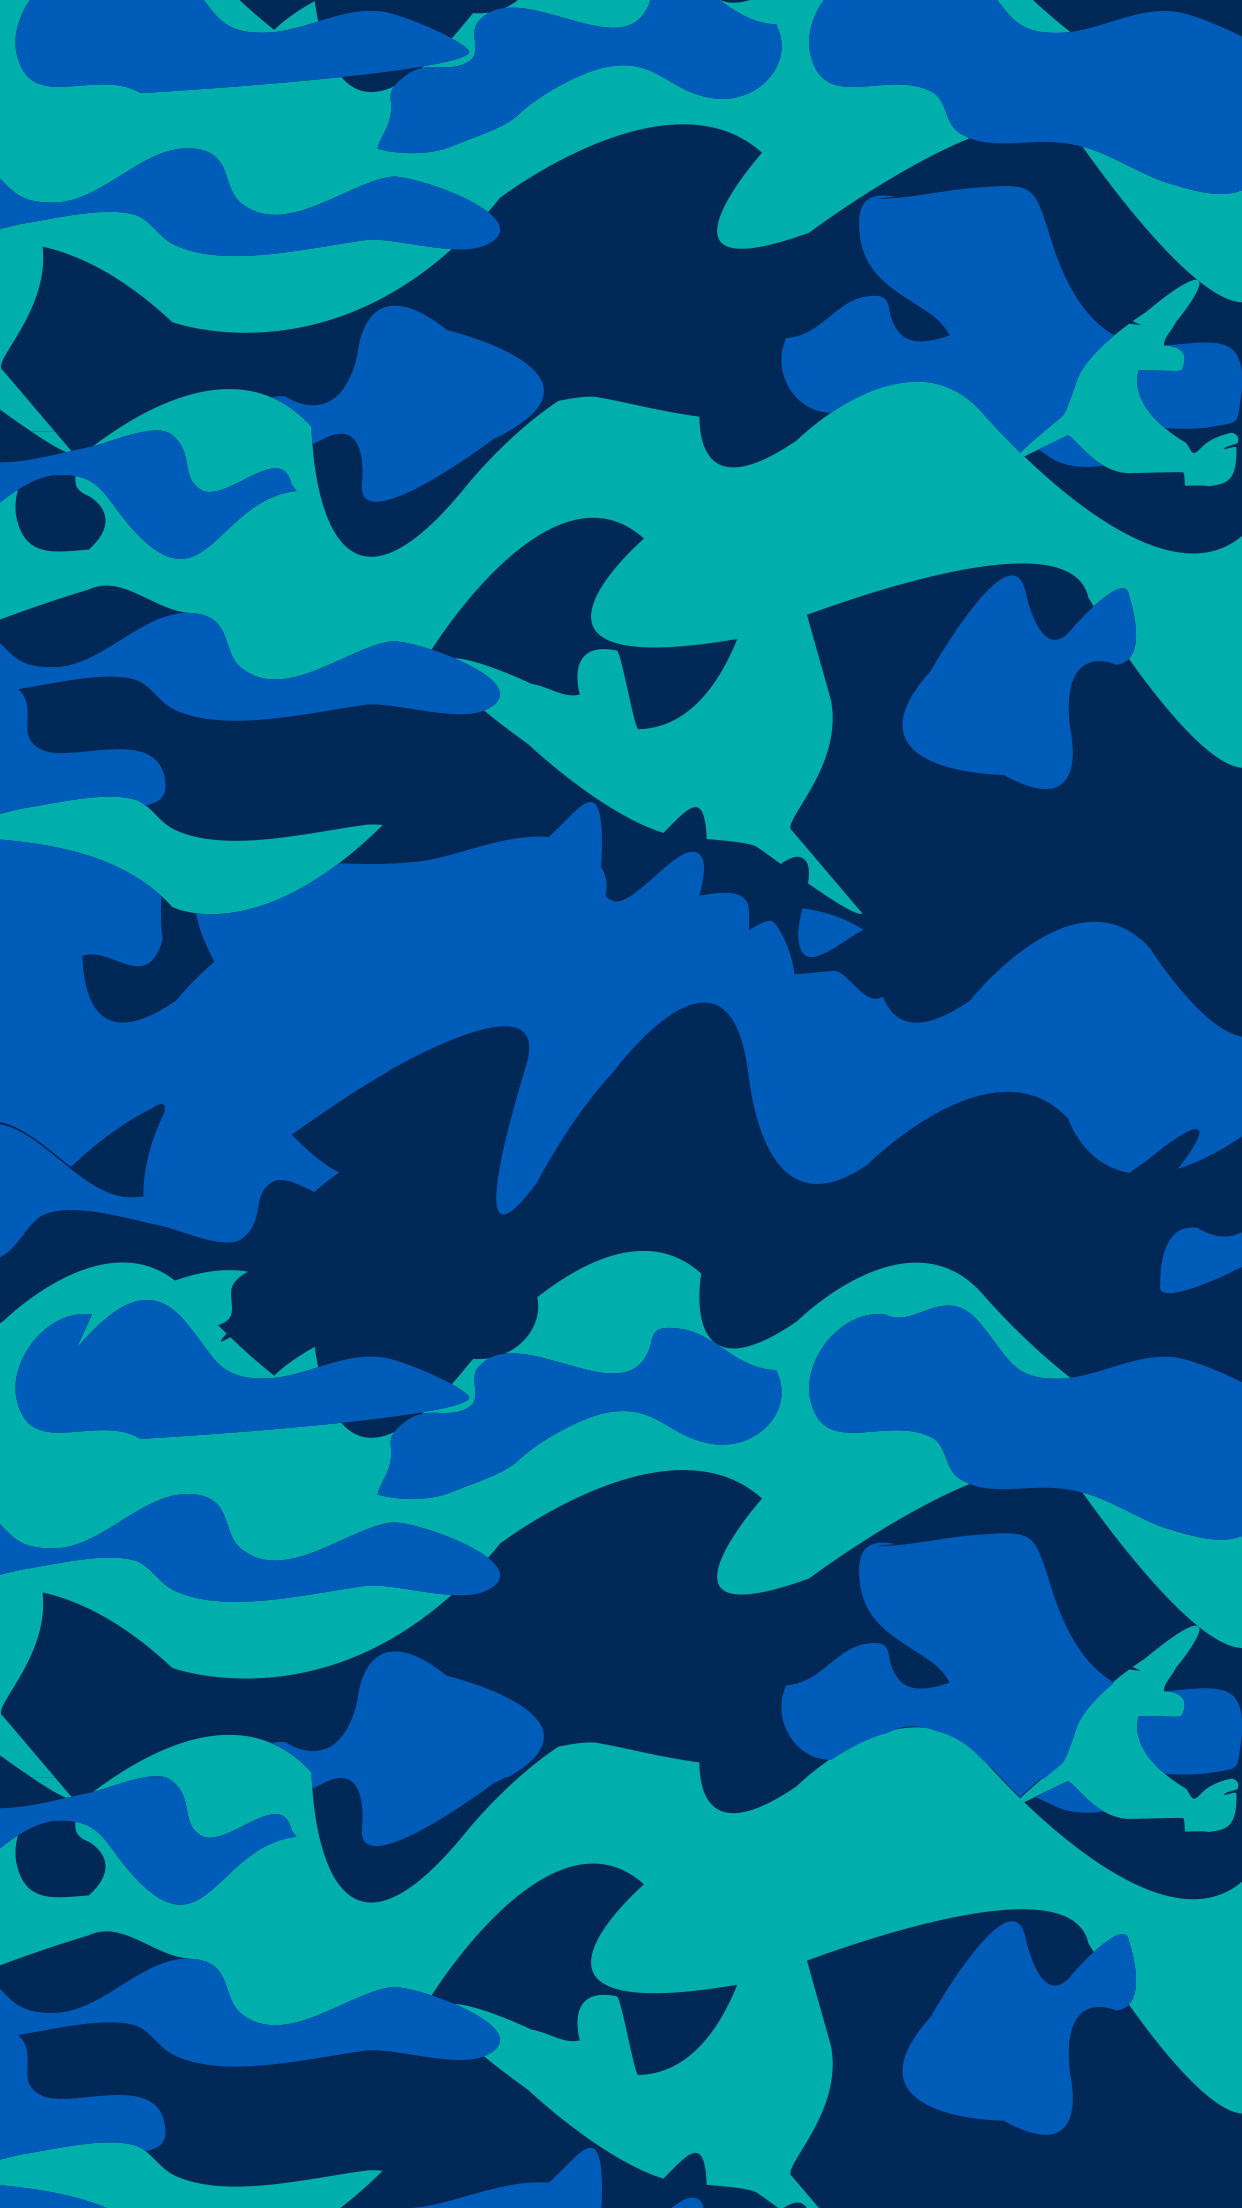 bape shark tapete,blau,aqua,muster,kobaltblau,türkis